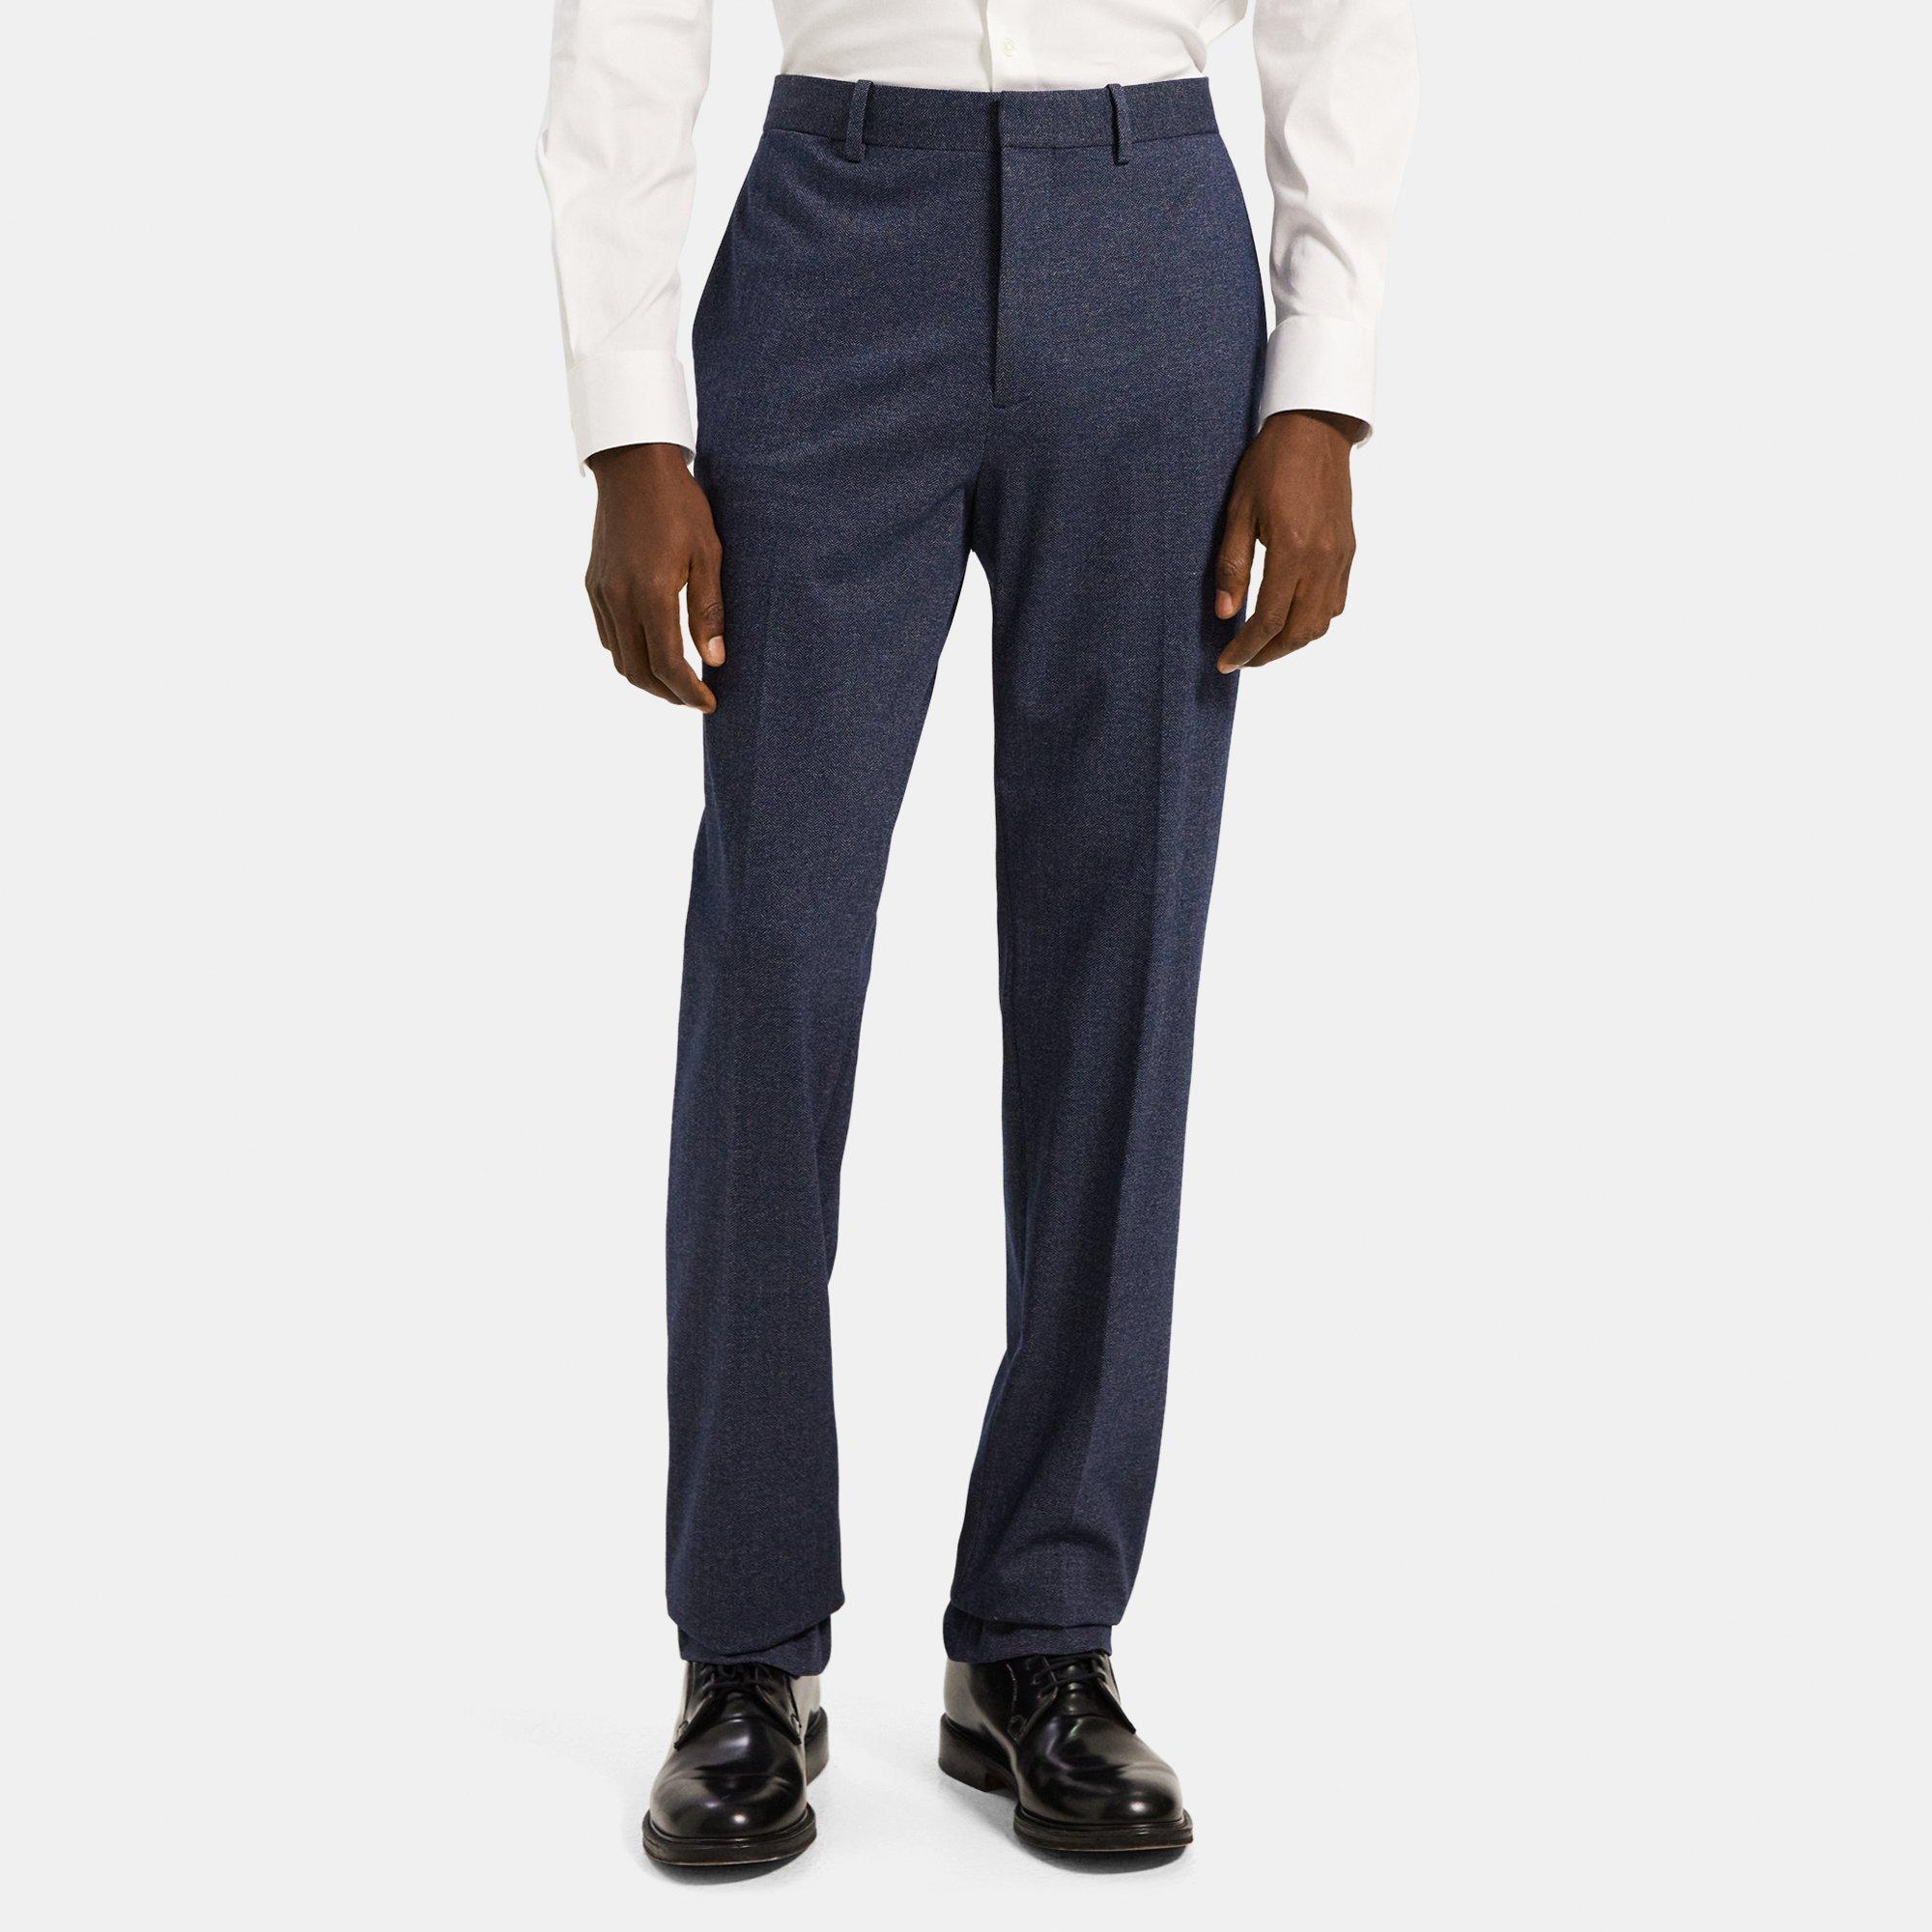 Theory Slim-Fit Suit Pant in Herringbone Viscose Blend